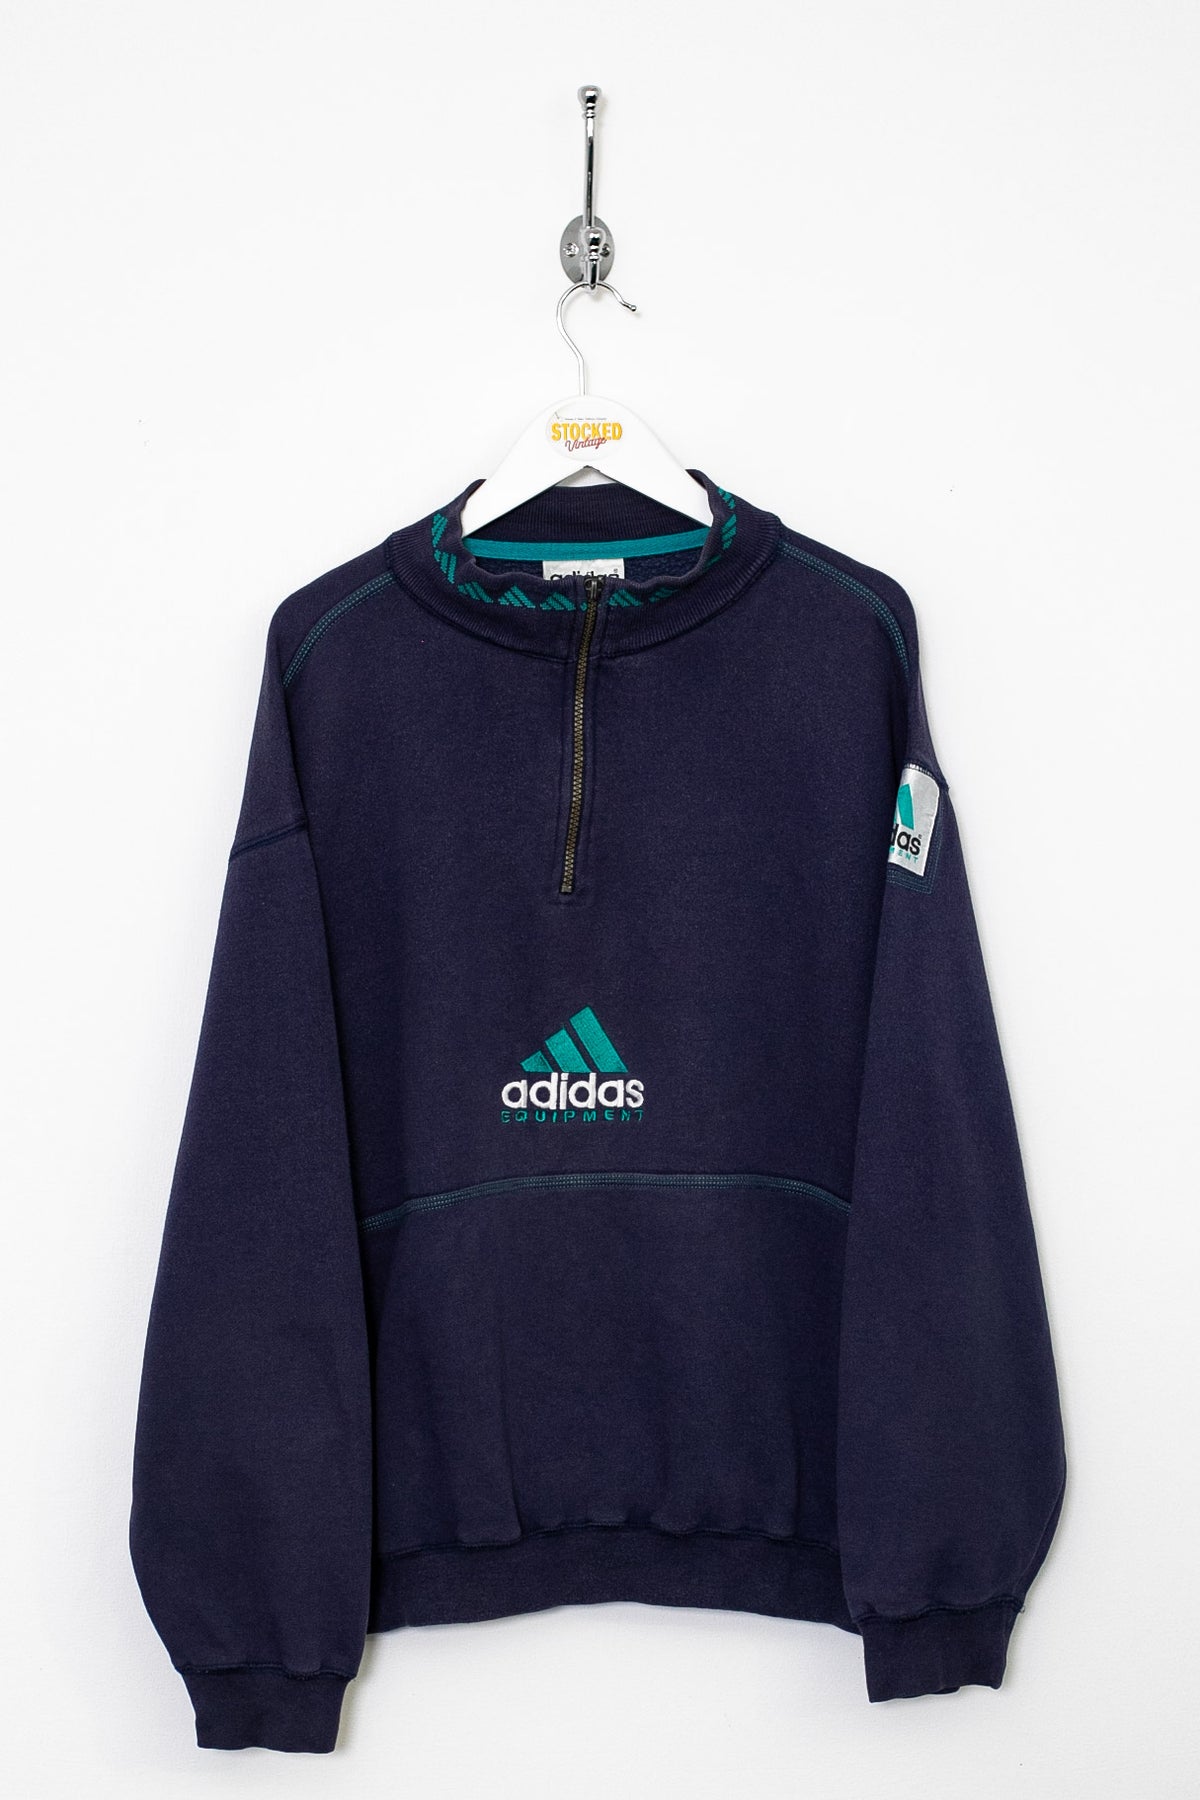 90s Adidas Equipment 1/4 Zip Sweatshirt (L)